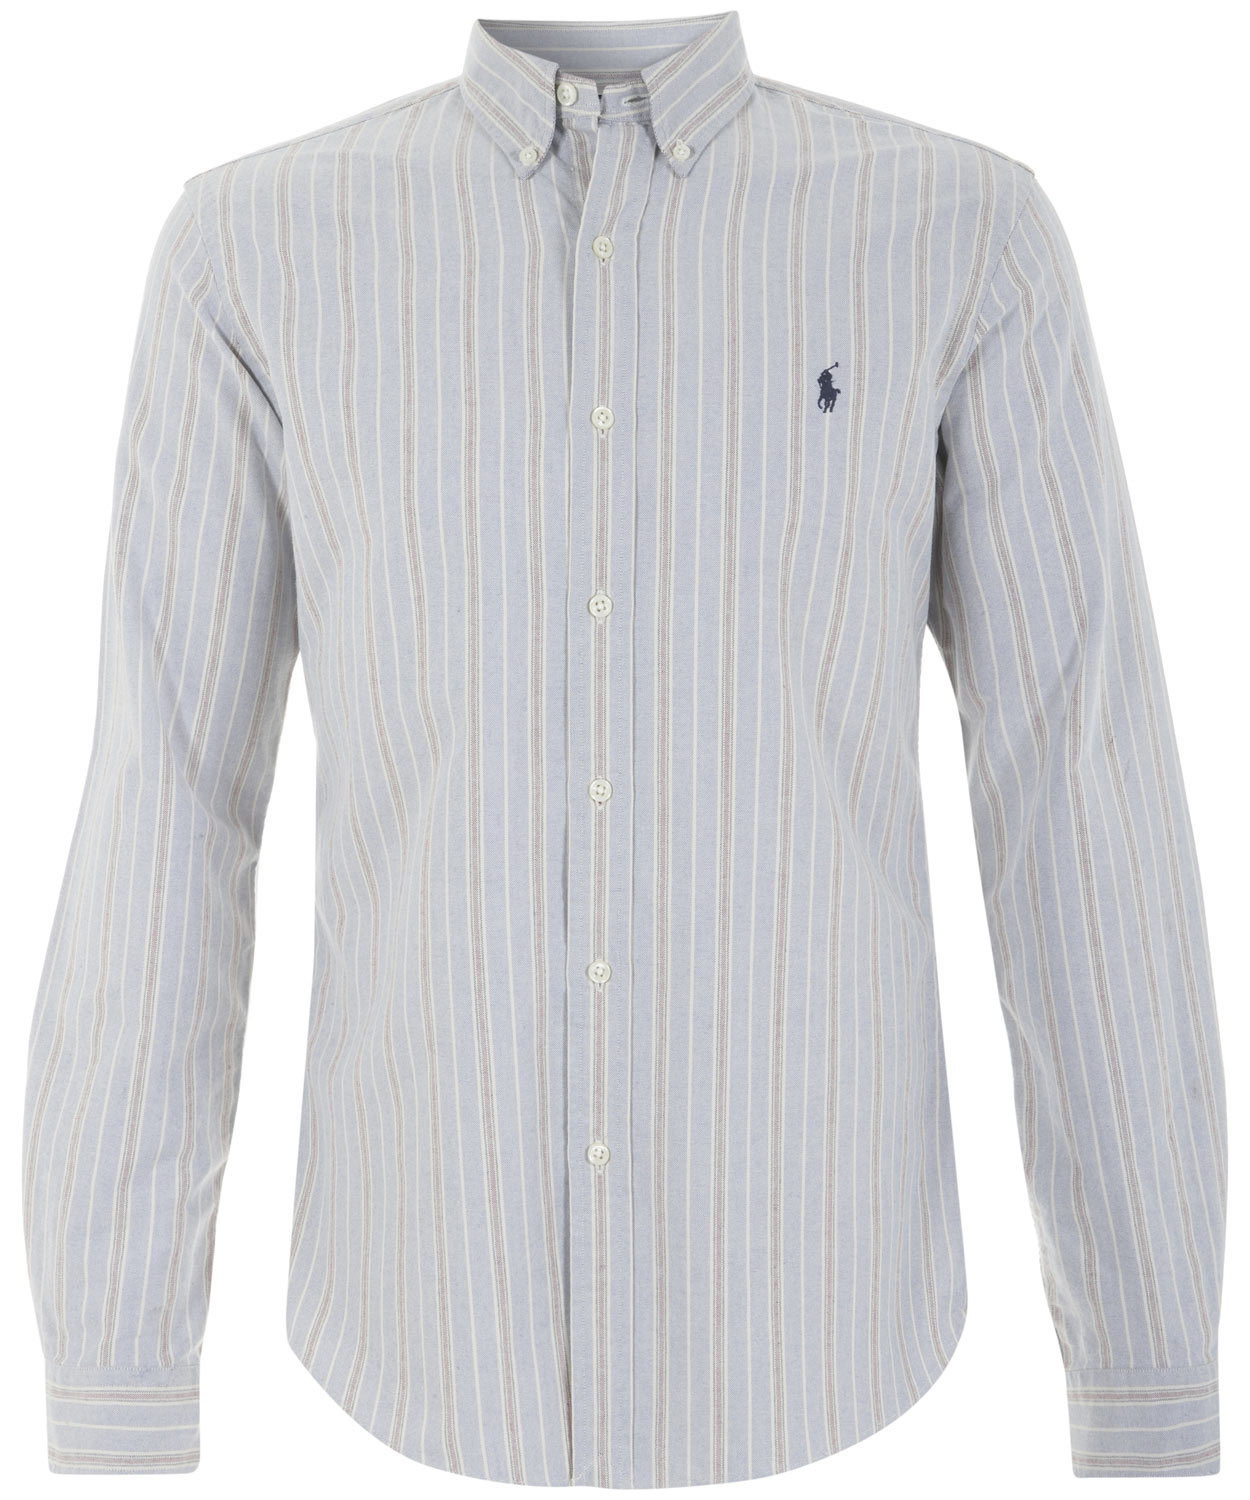 Lyst - Polo Ralph Lauren Light Blue Striped Oxford Shirt in White for Men